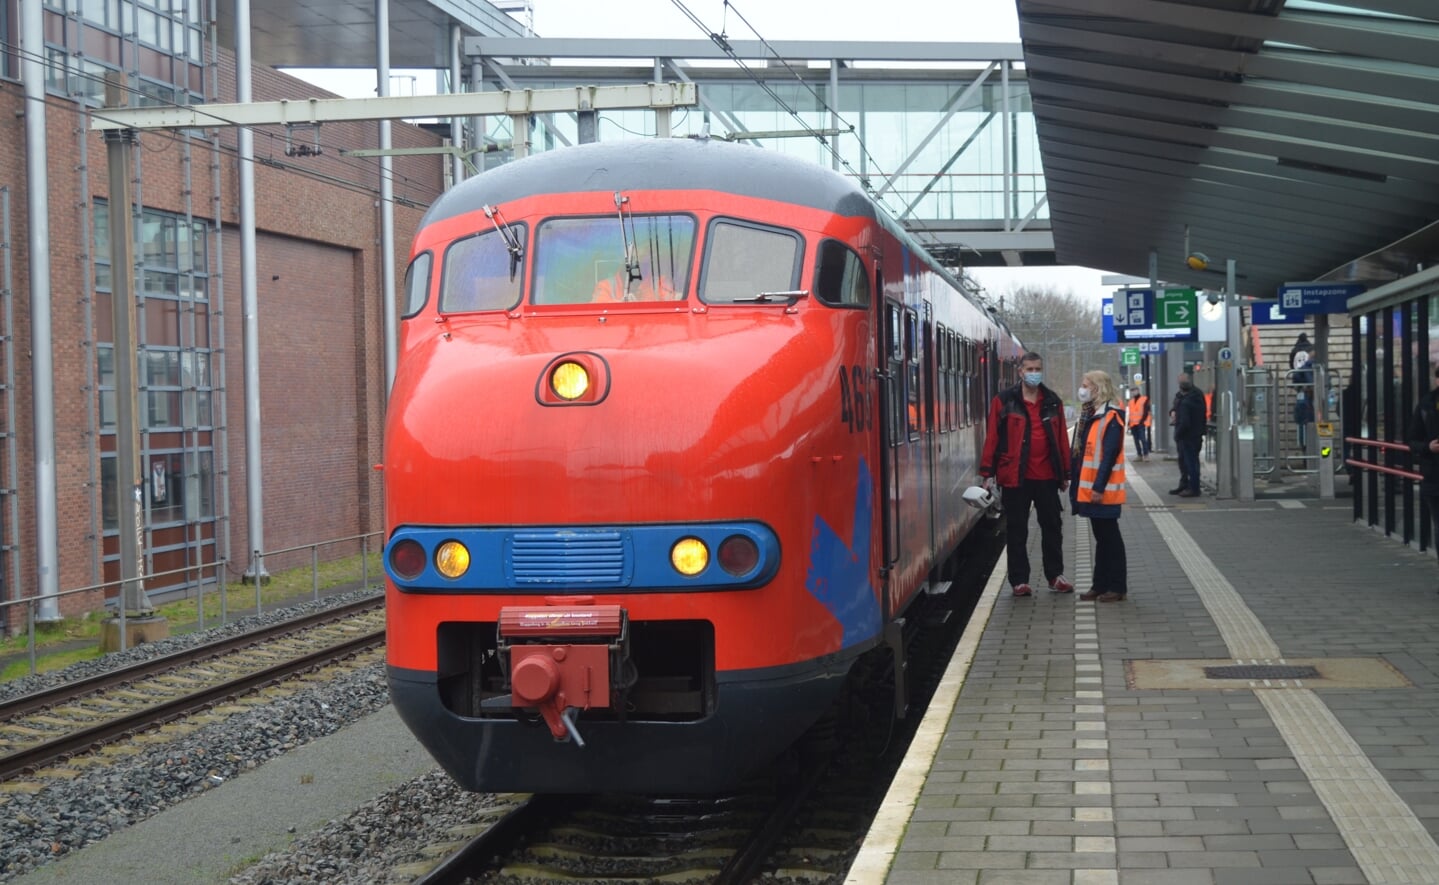 De Karel, een trein die wordt ingezet voor charitatieve activiteiten om geld in te zamelen voor KWF Kankerbestrijding, deed vandaag station Boxtel aan.